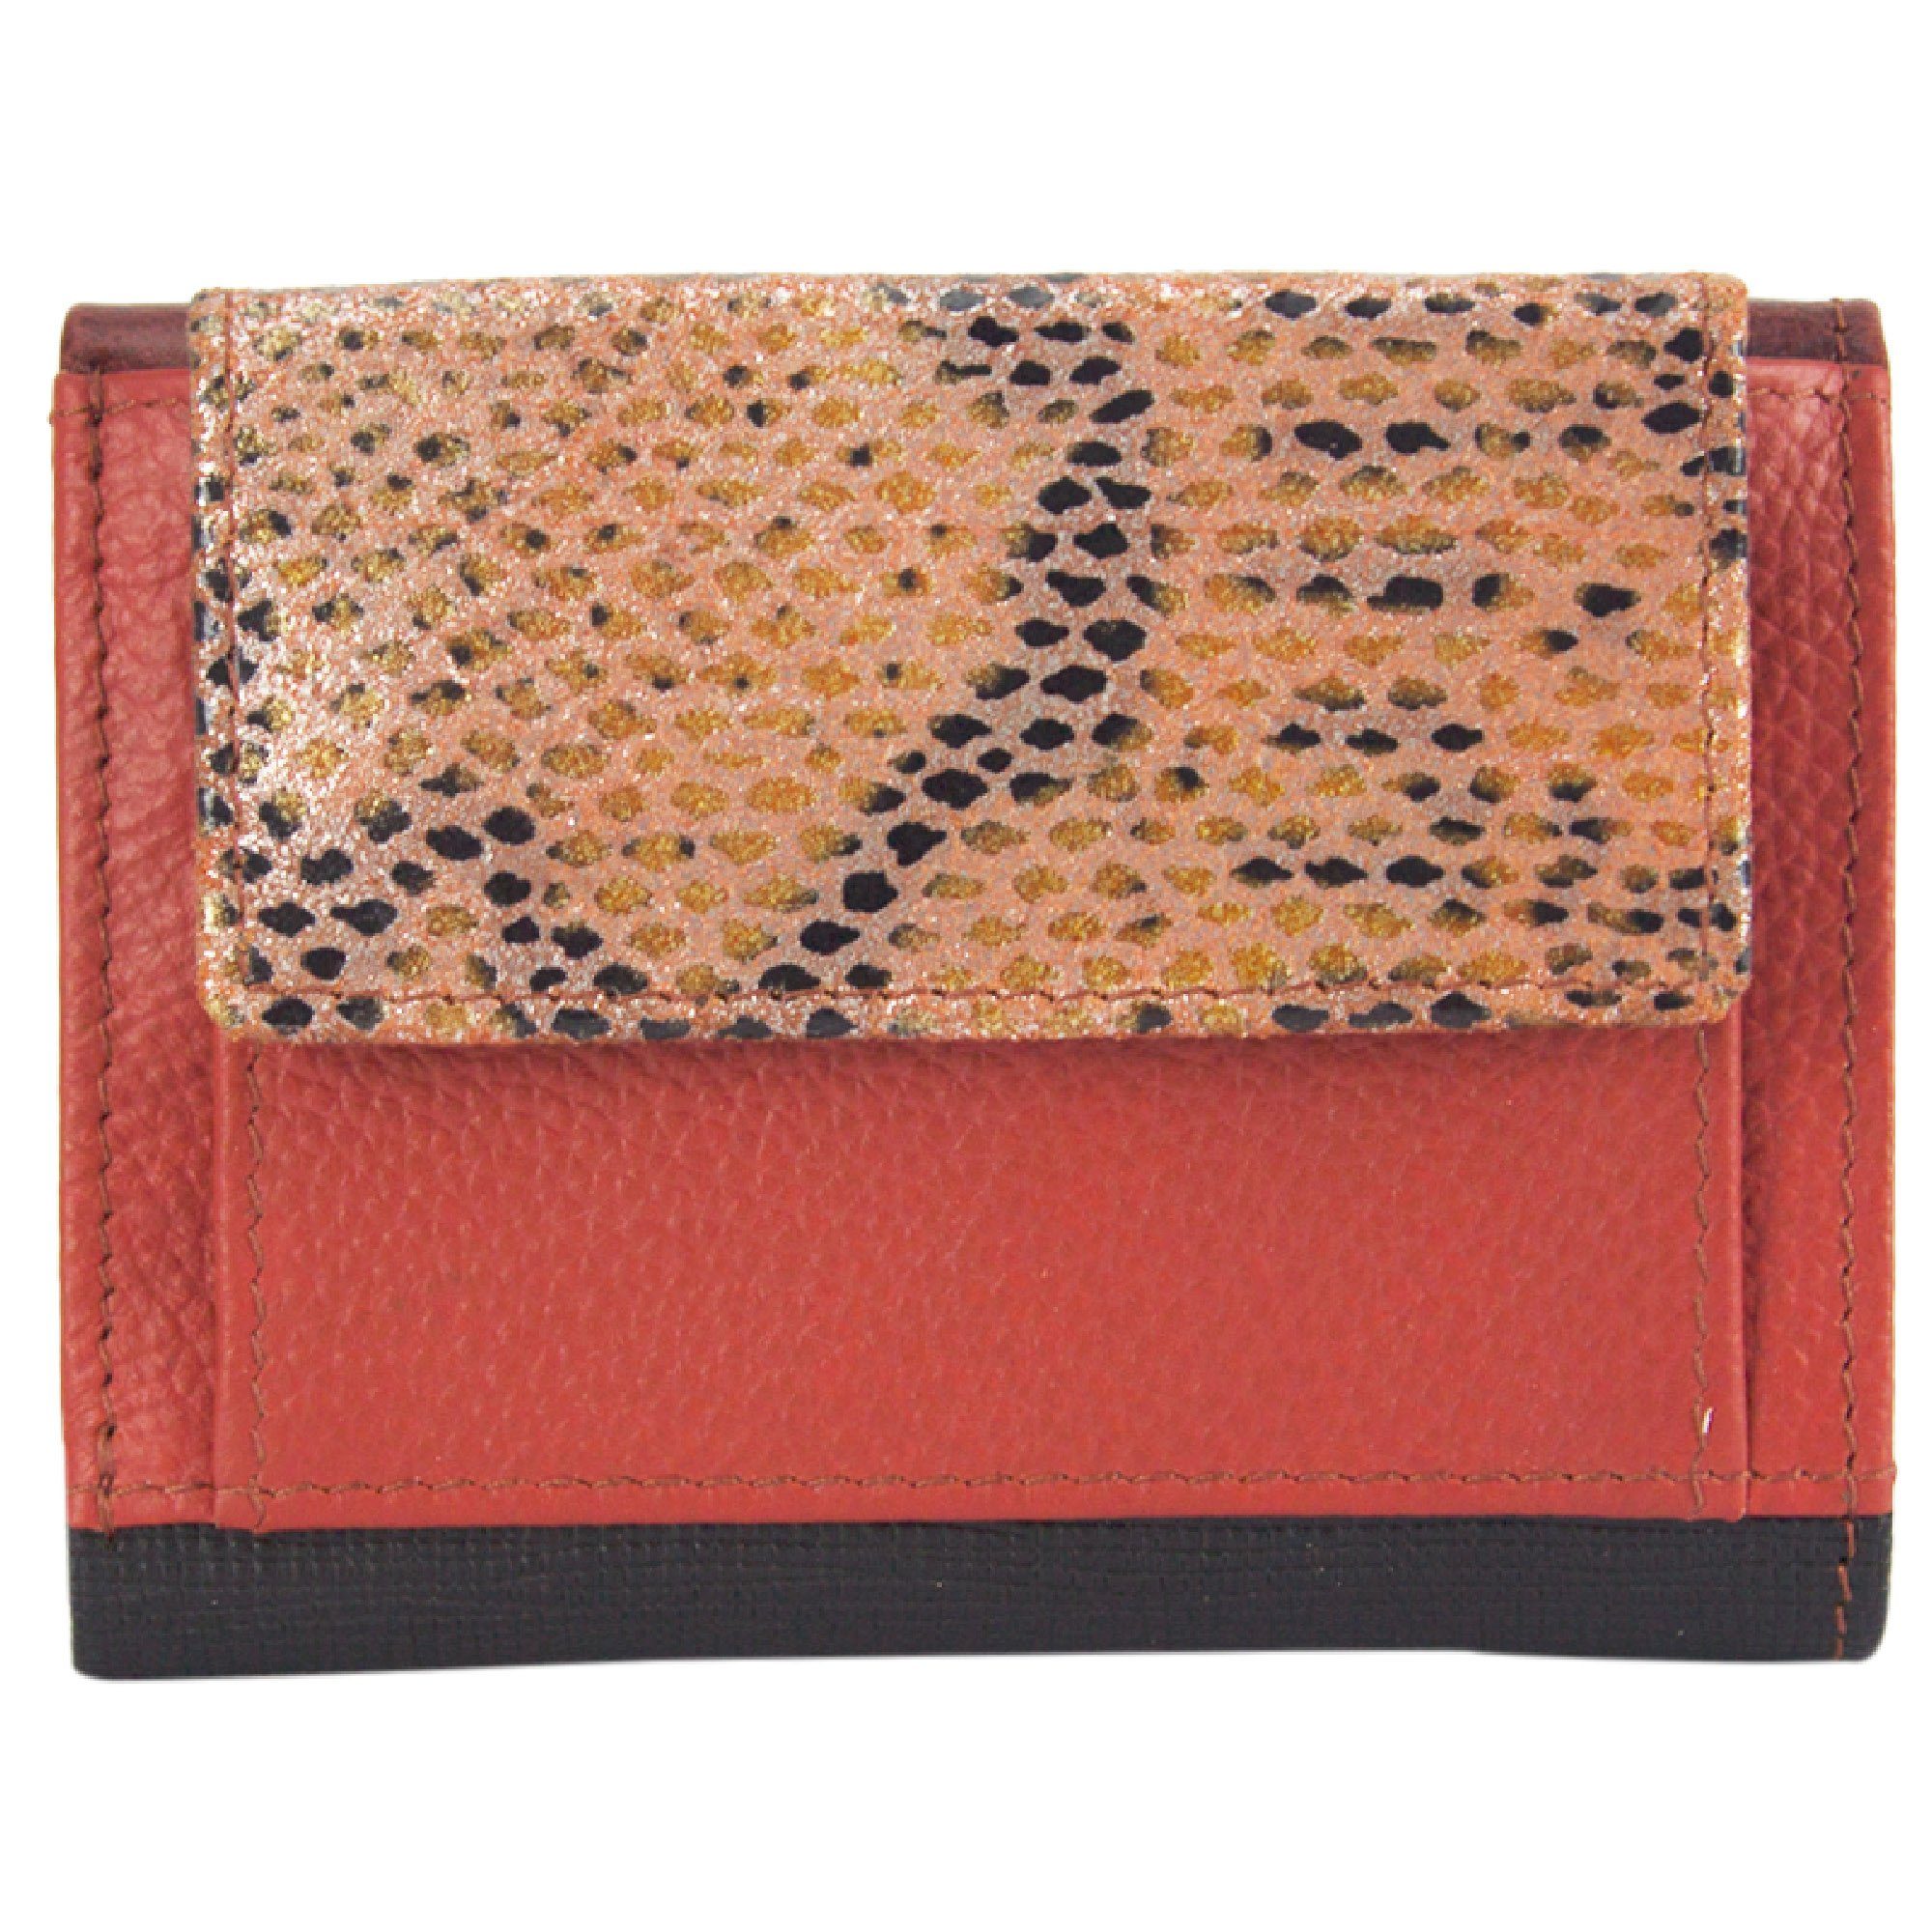 Sunsa Mini Geldbörse Mini klein Leder Geldbörse Geldbeutel Portemonnaie Brieftasche, echt Leder, aus recycelten Lederresten, mit RFID-Schutz, Unisex rot/schwarz